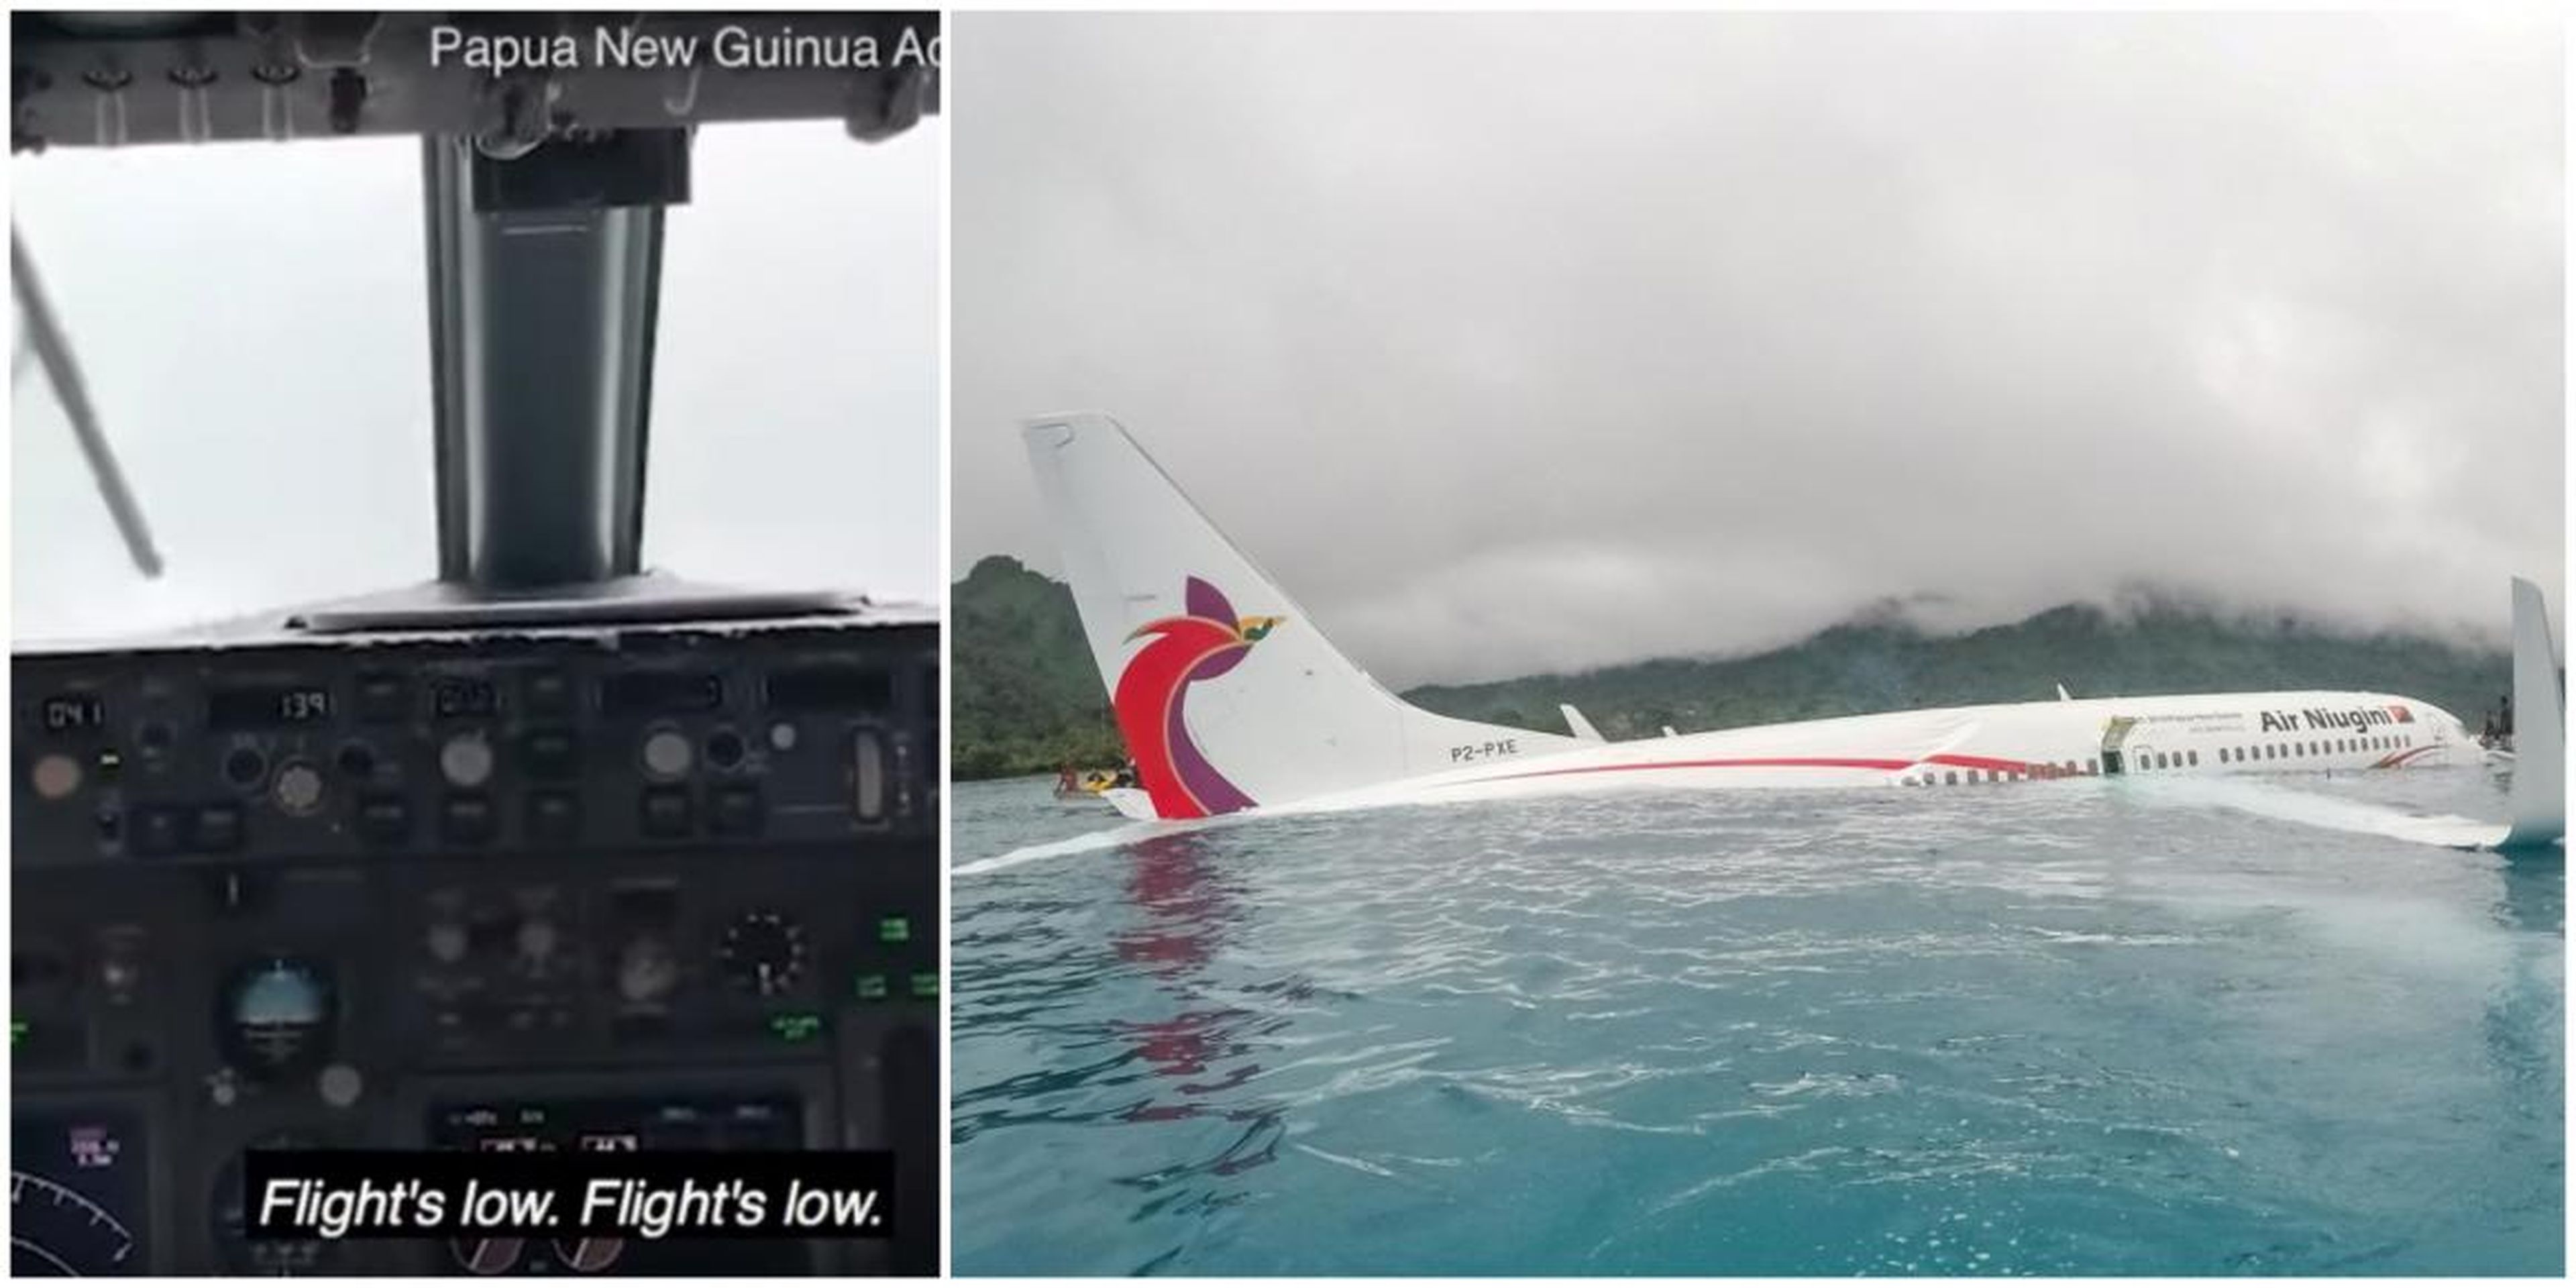 La cabina del avión de Air Niugini después de que se estrellara en septiembre, a la izquierda, y el avión en el agua, a la derecha.